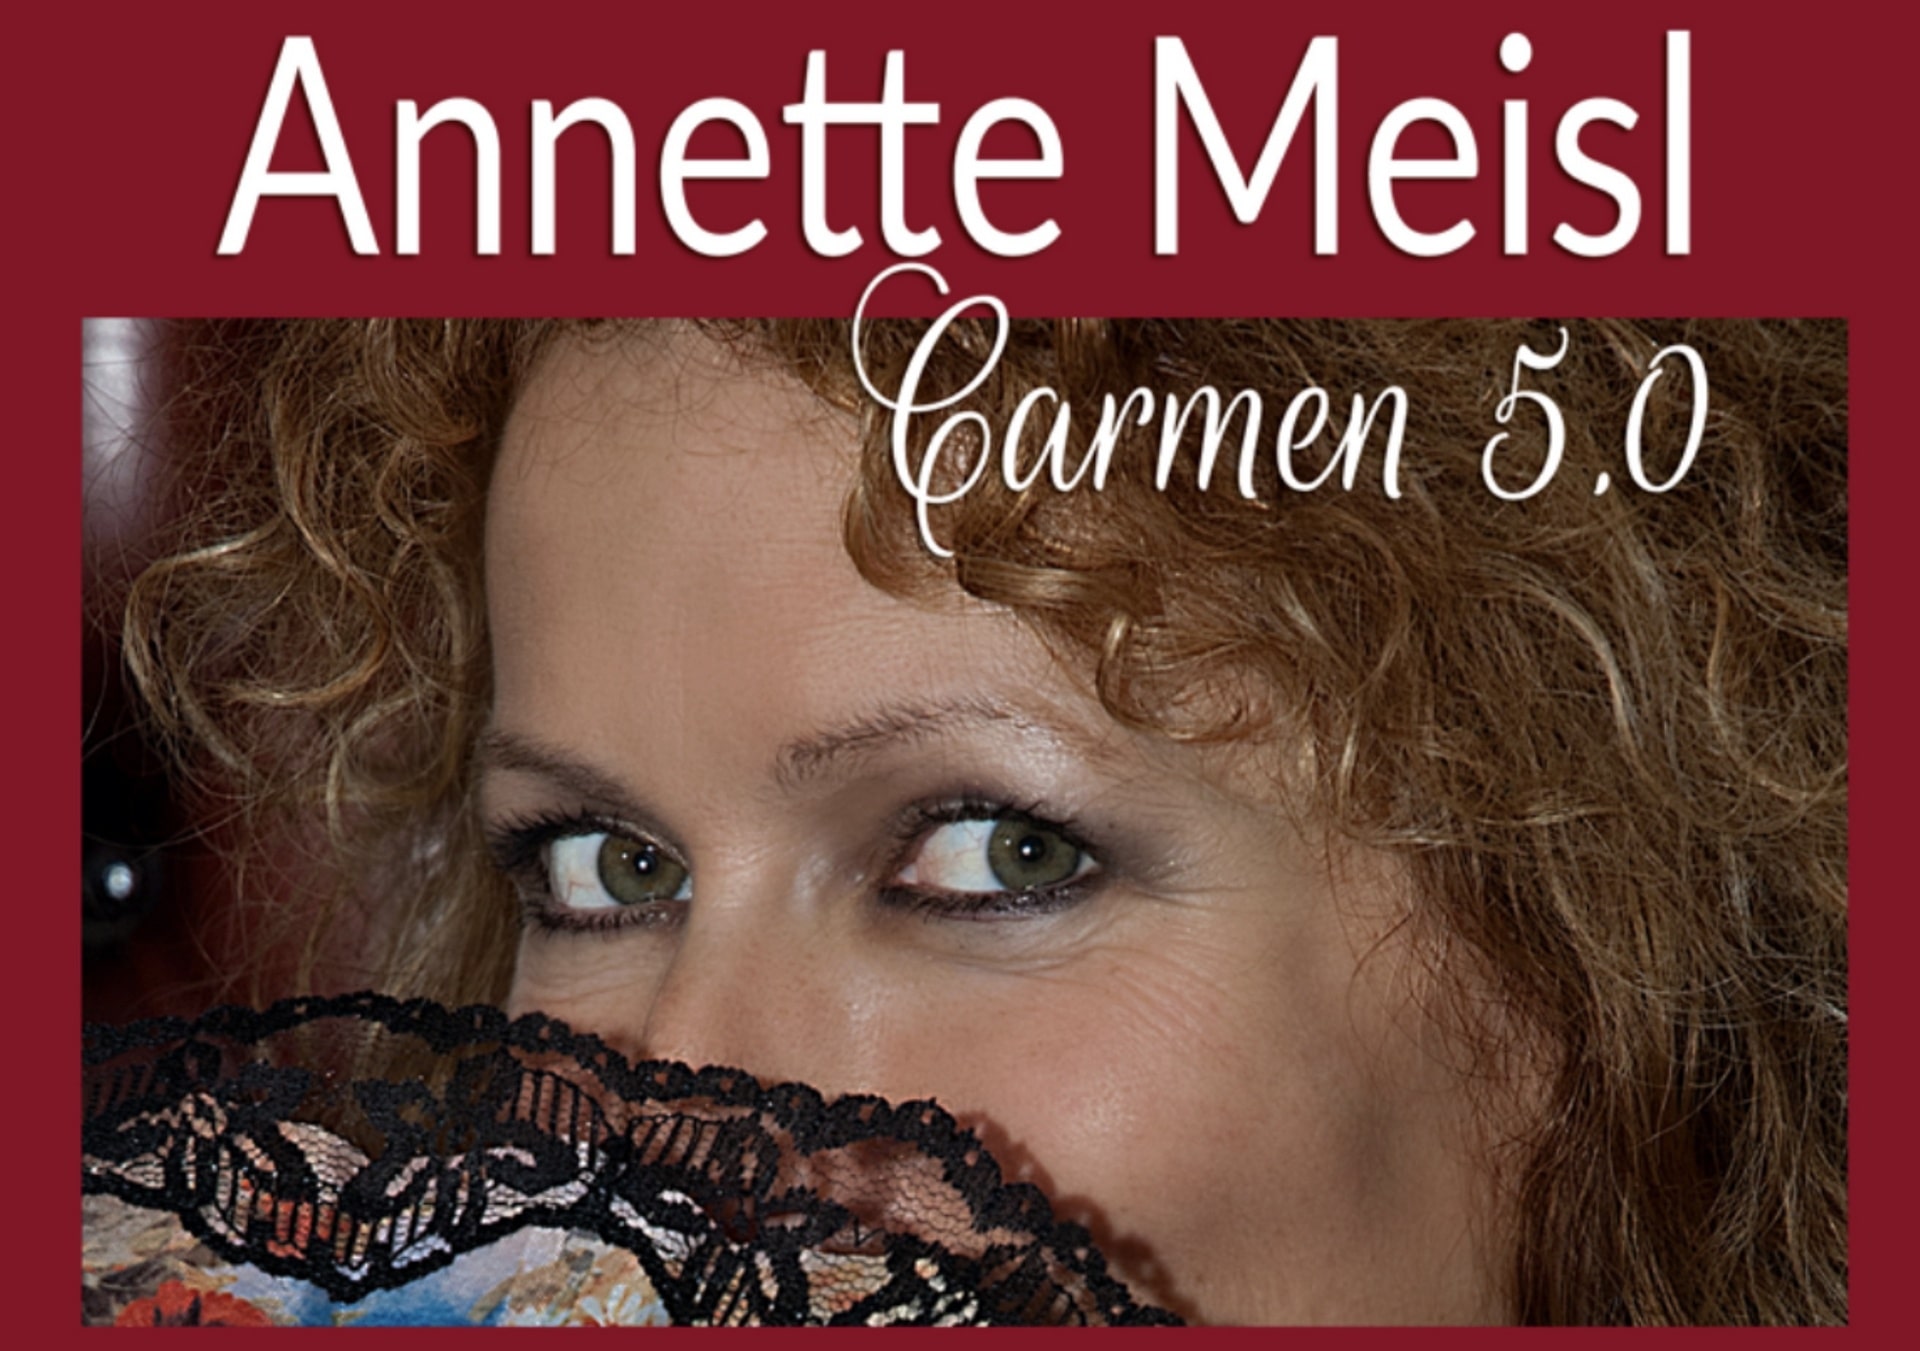 Annette Meisl Carmen 5.0